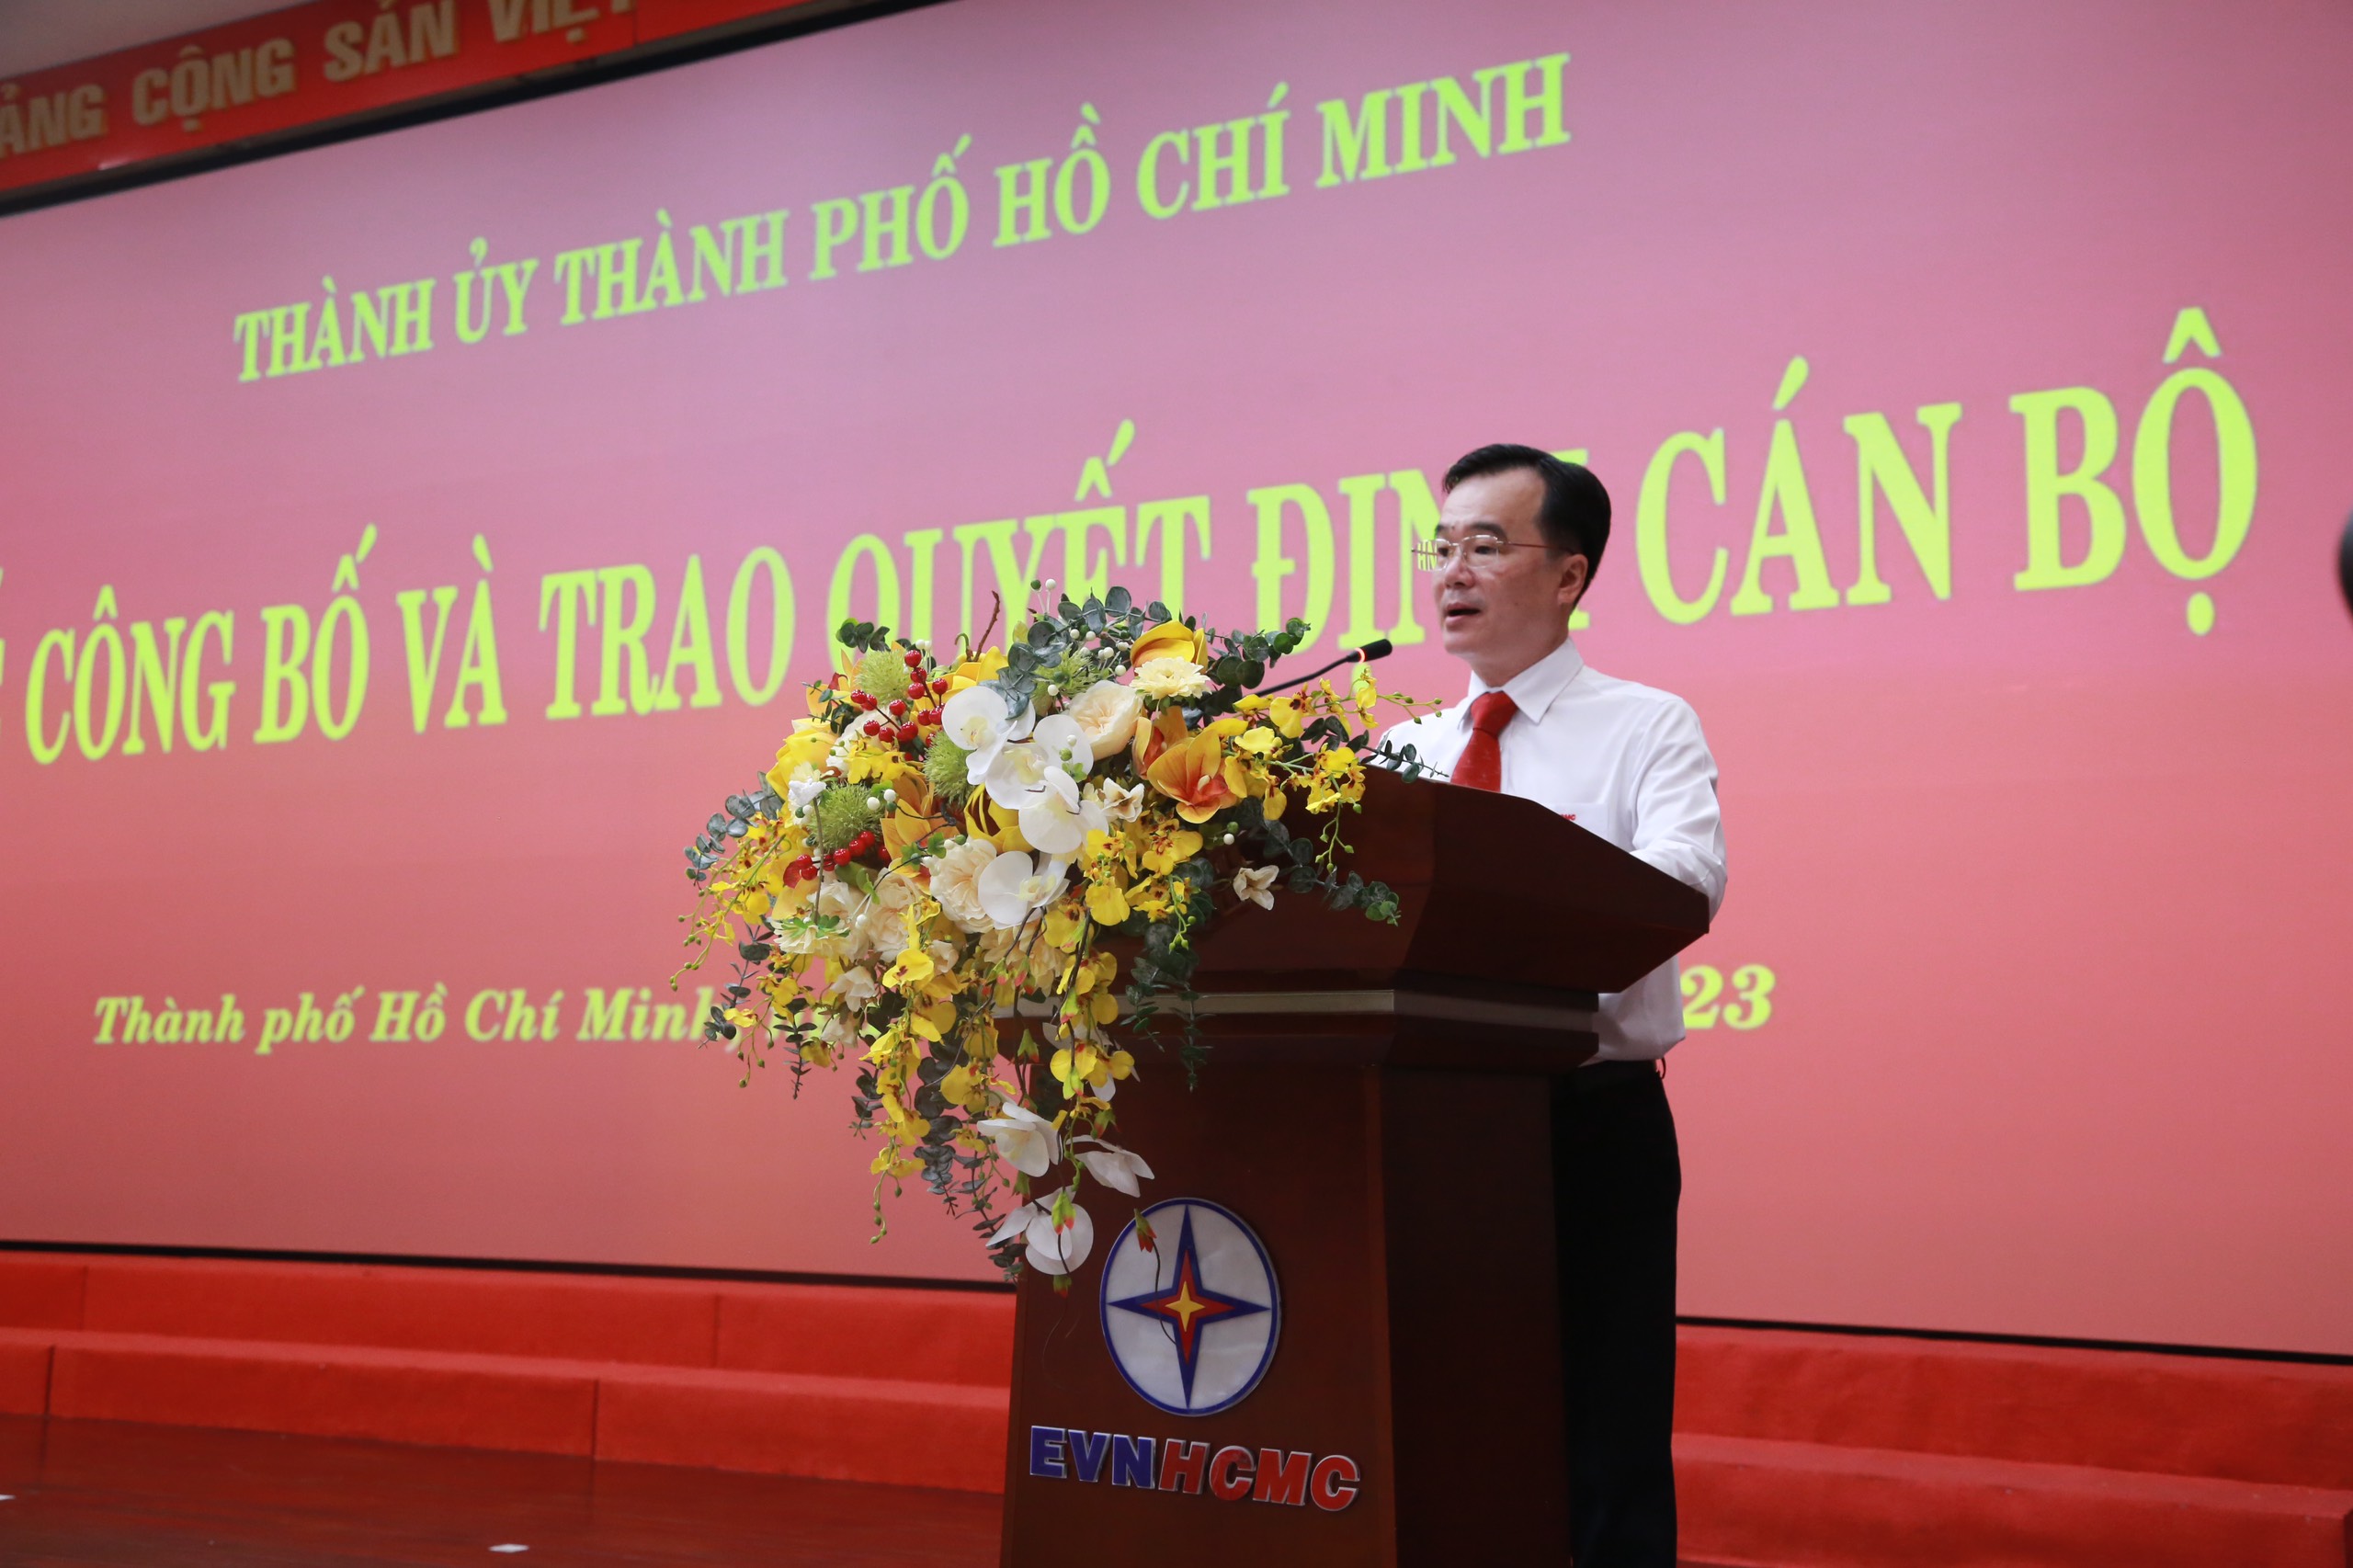 Đồng chí Phó Bí thư Đảng ủy EVNHCMC Trần Vũ Quang phát biểu nhận nhiệm vụ.